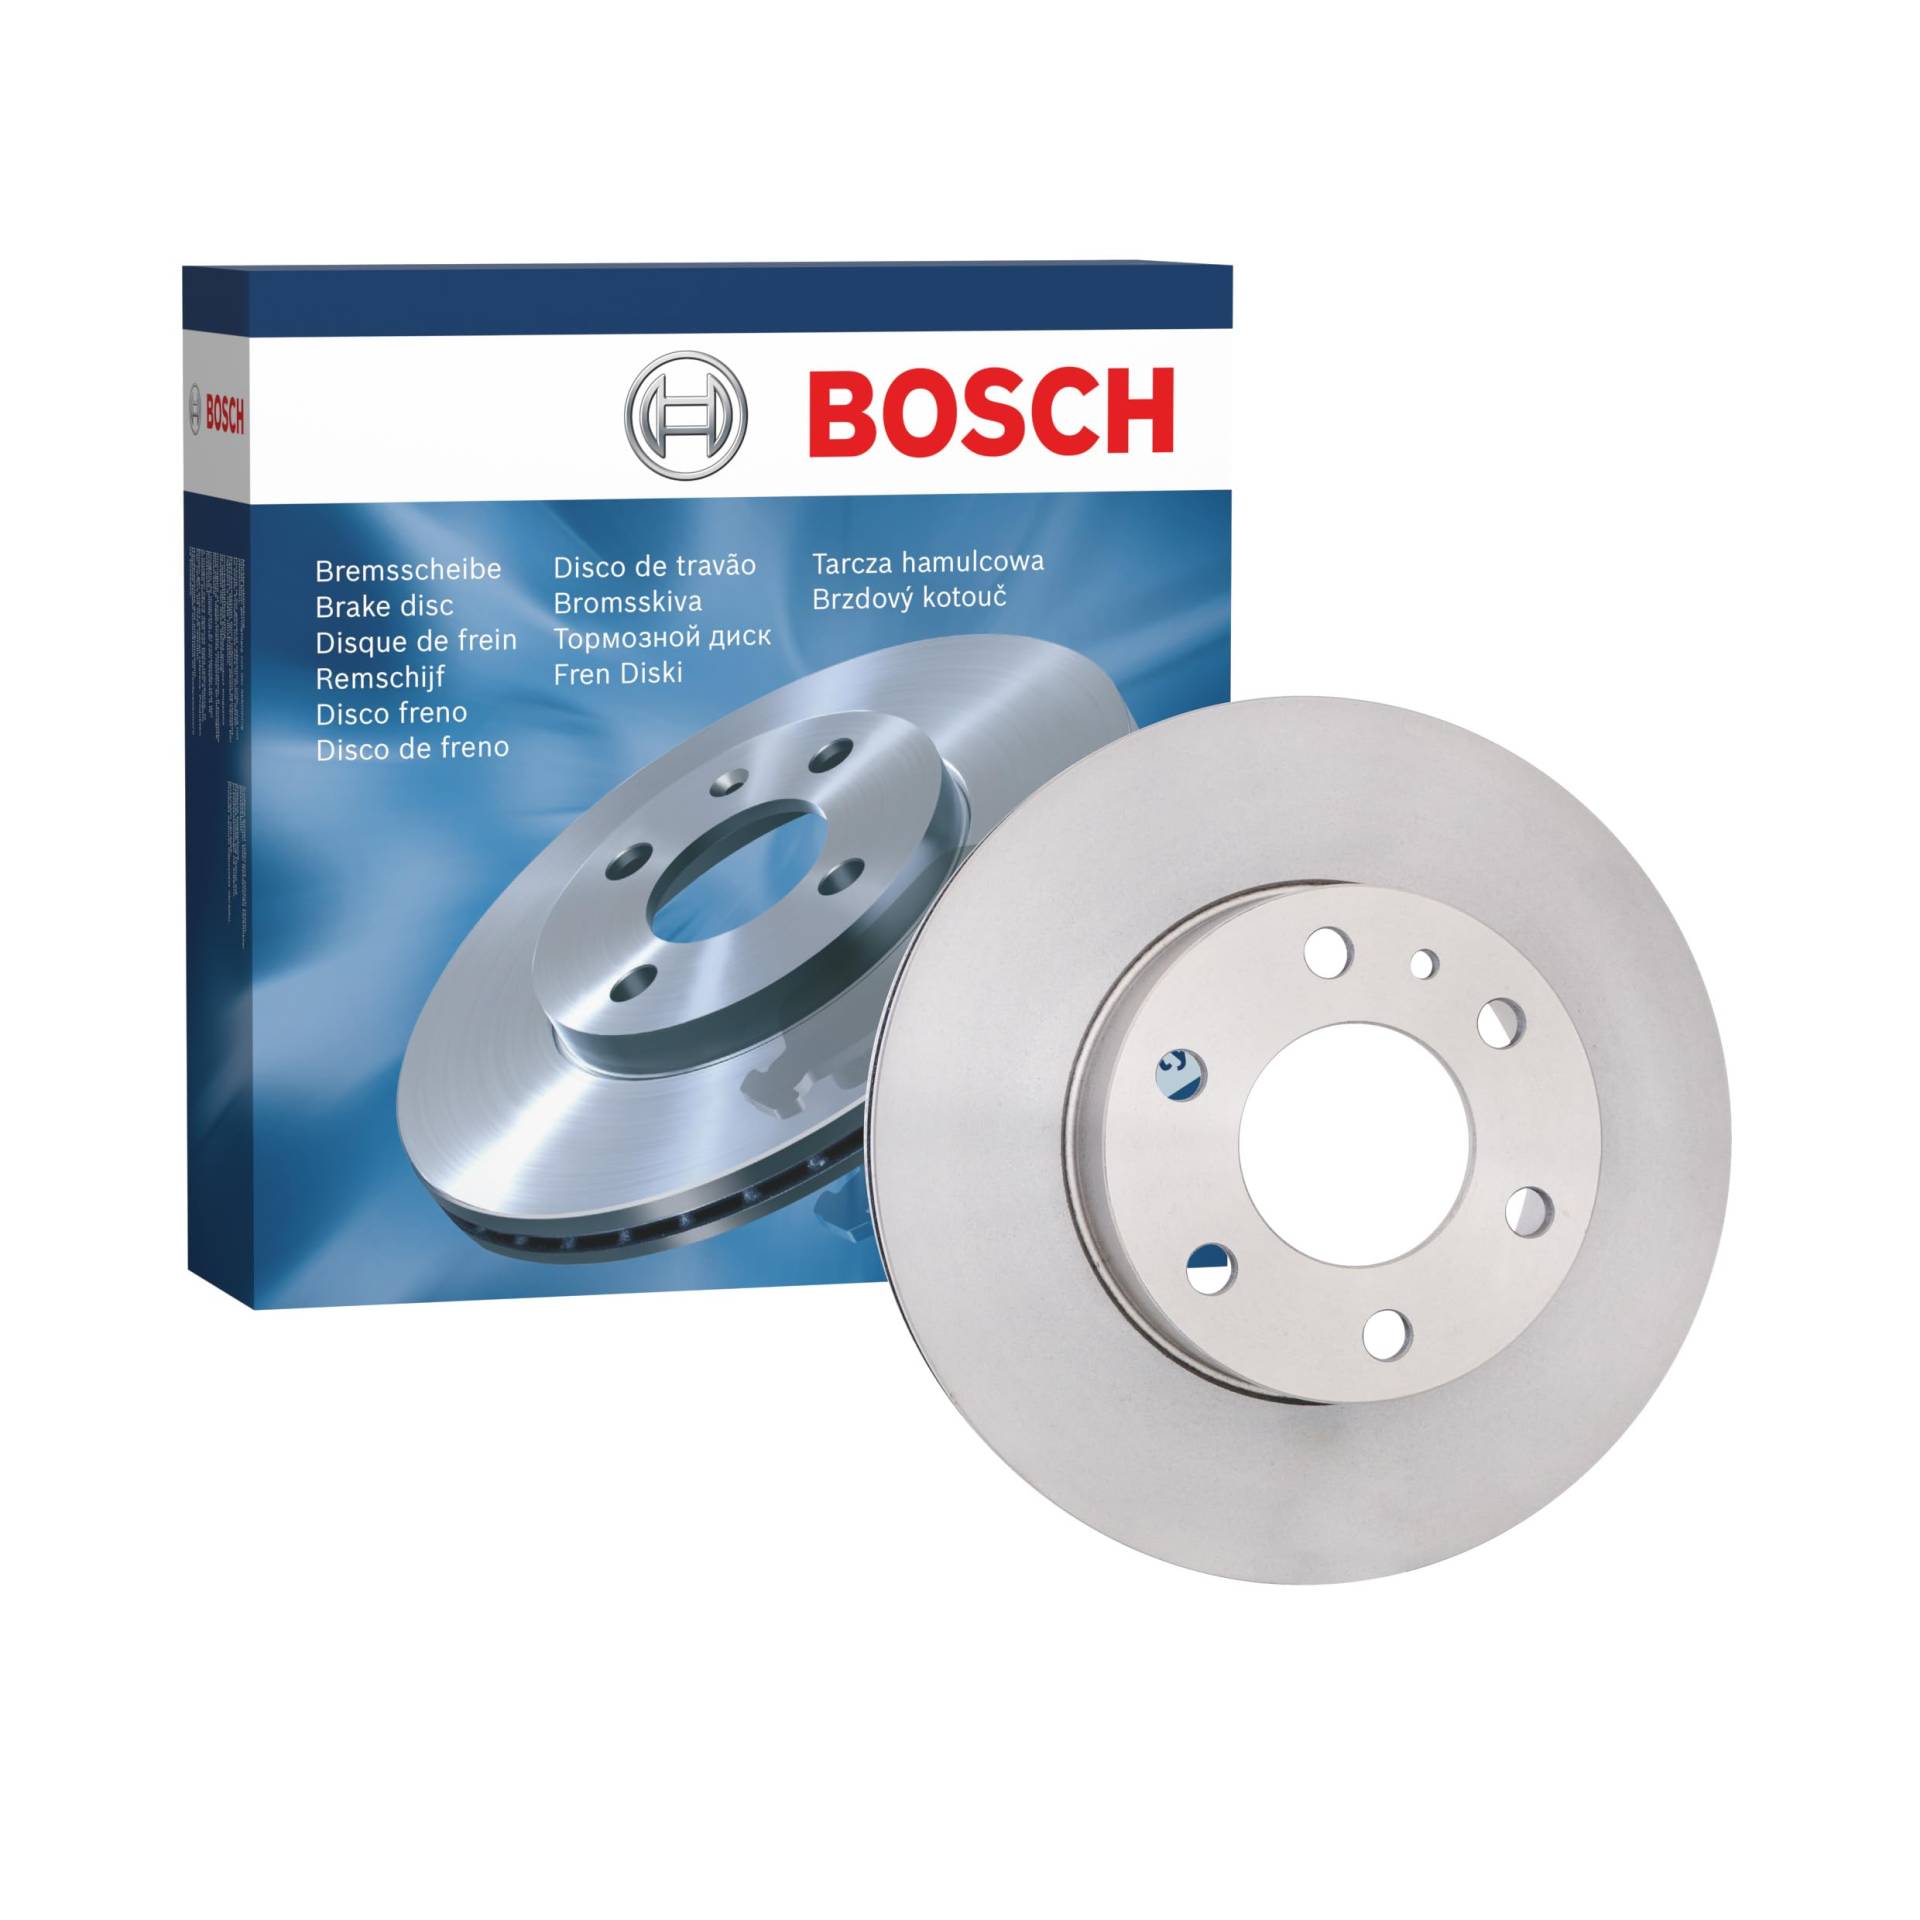 Bosch BD1486 Bremsscheiben - Vorderachse - ECE-R90 Zertifizierung - eine Bremsscheibe von Bosch Automotive